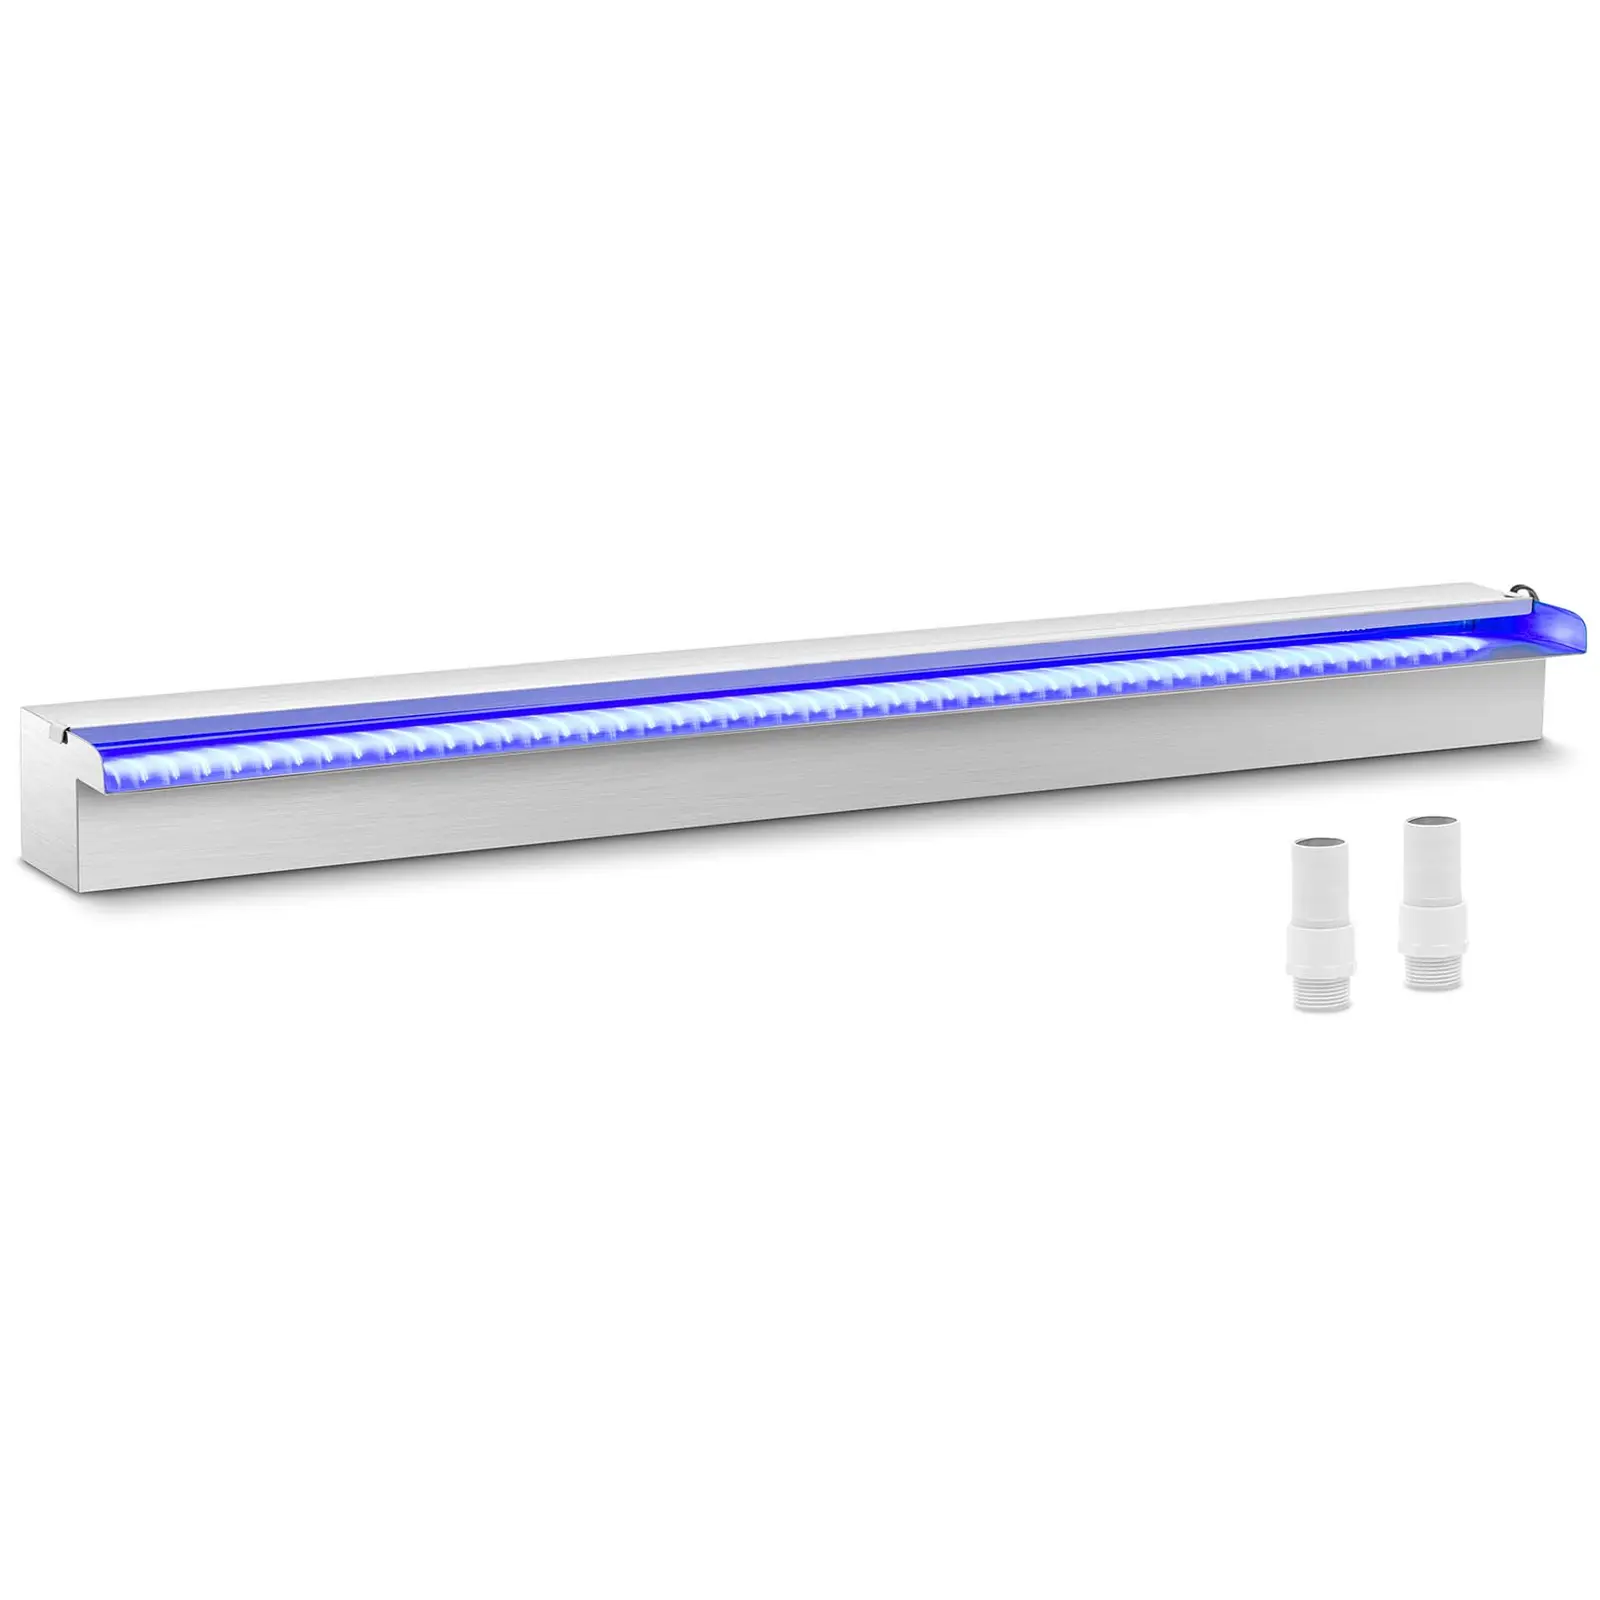 Medence szökőkút - 90 cm - LED világítás - kék/fehér